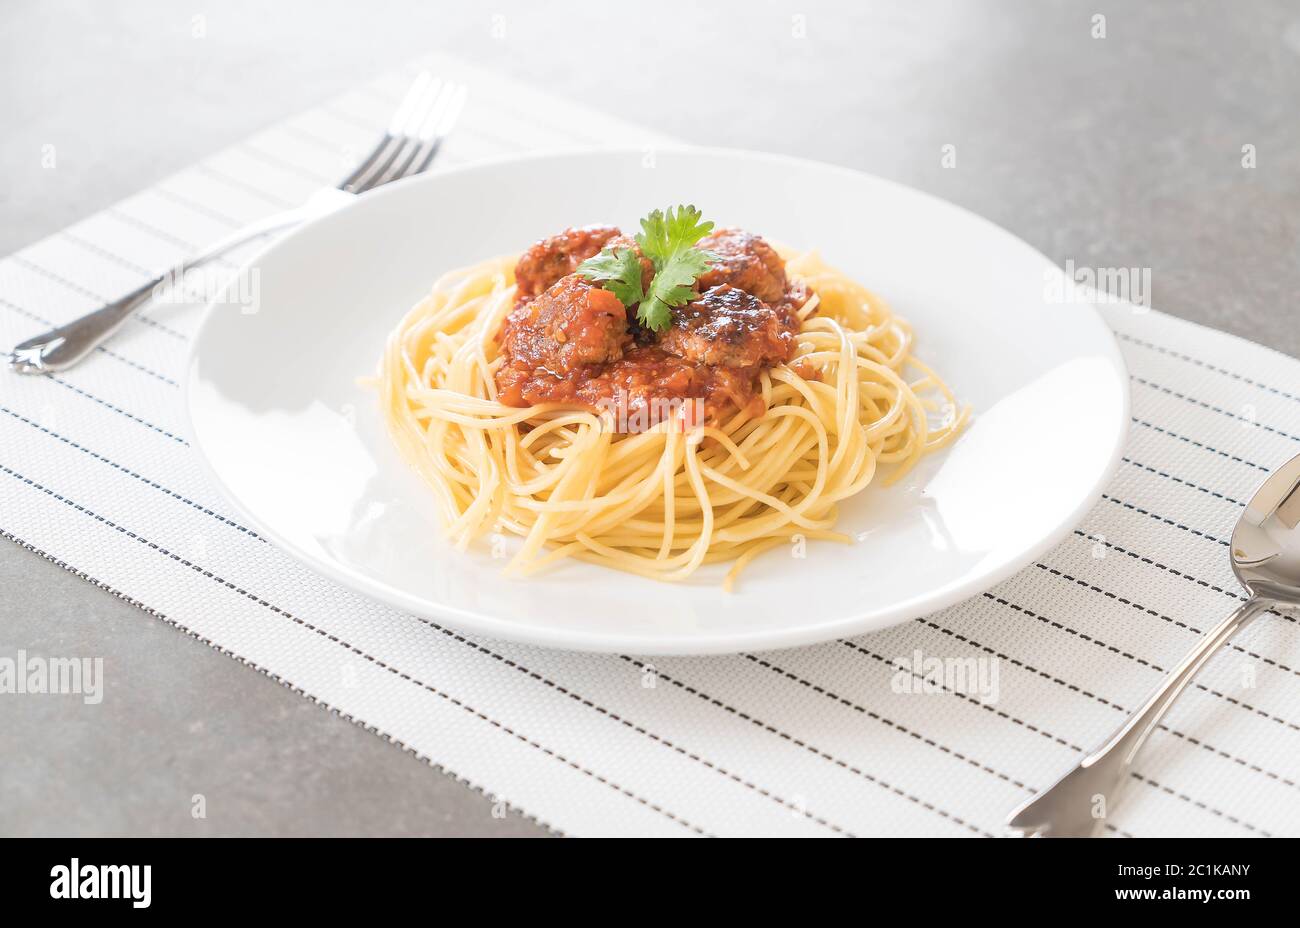 Spaghetti und Fleischbällchen - italienische Küche Stockfoto